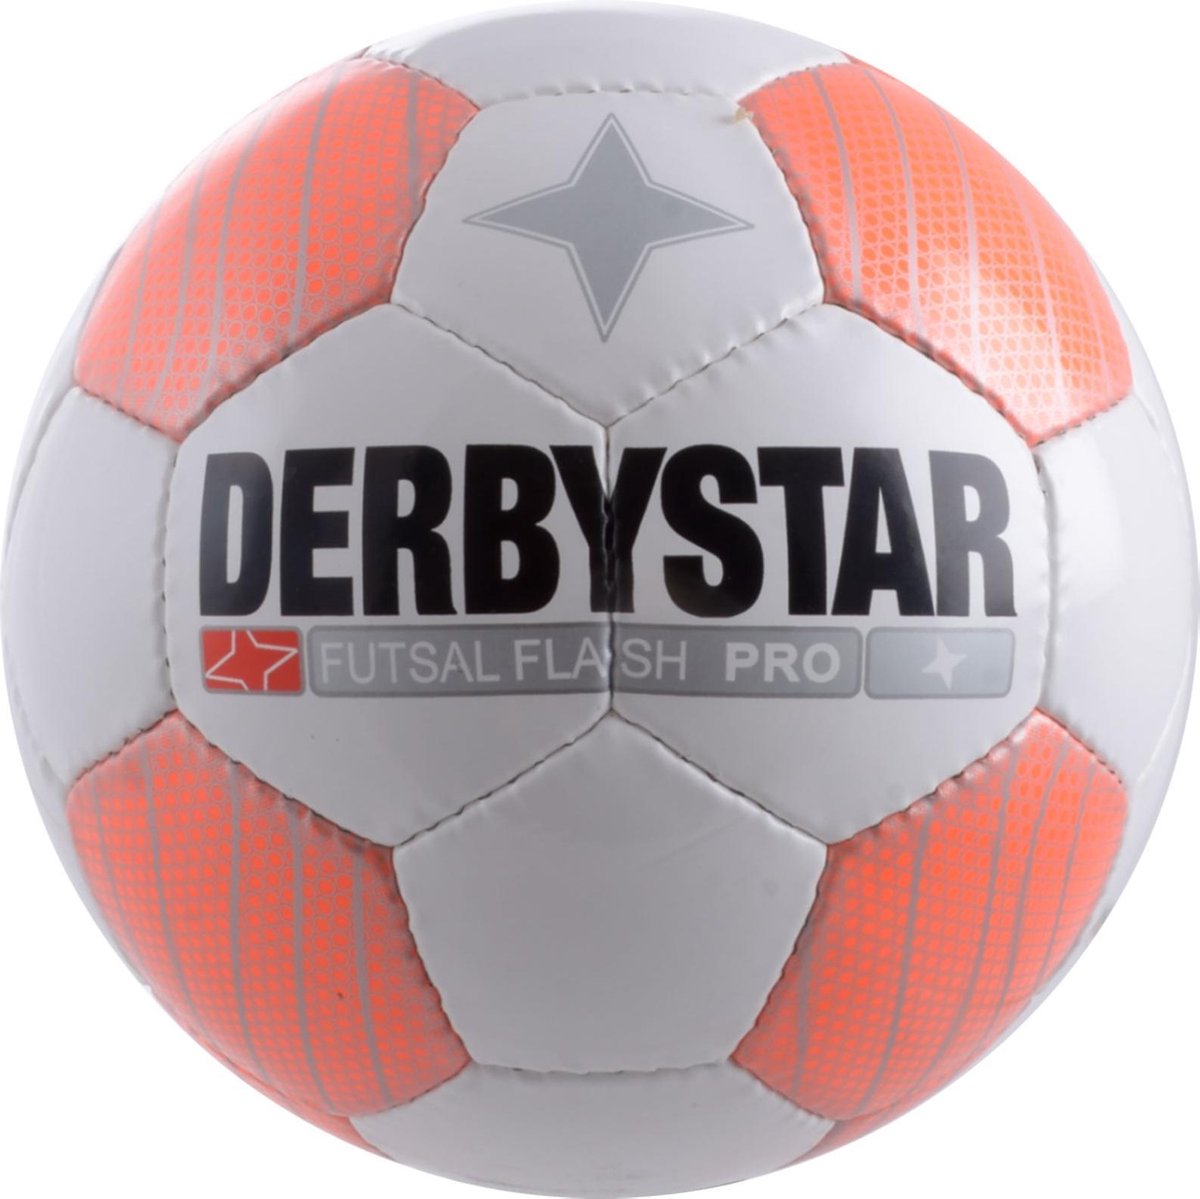 welvaart Kleverig gewicht Derby Star Futsal Flash Pro Zaalvoetbal - Multi | bol.com